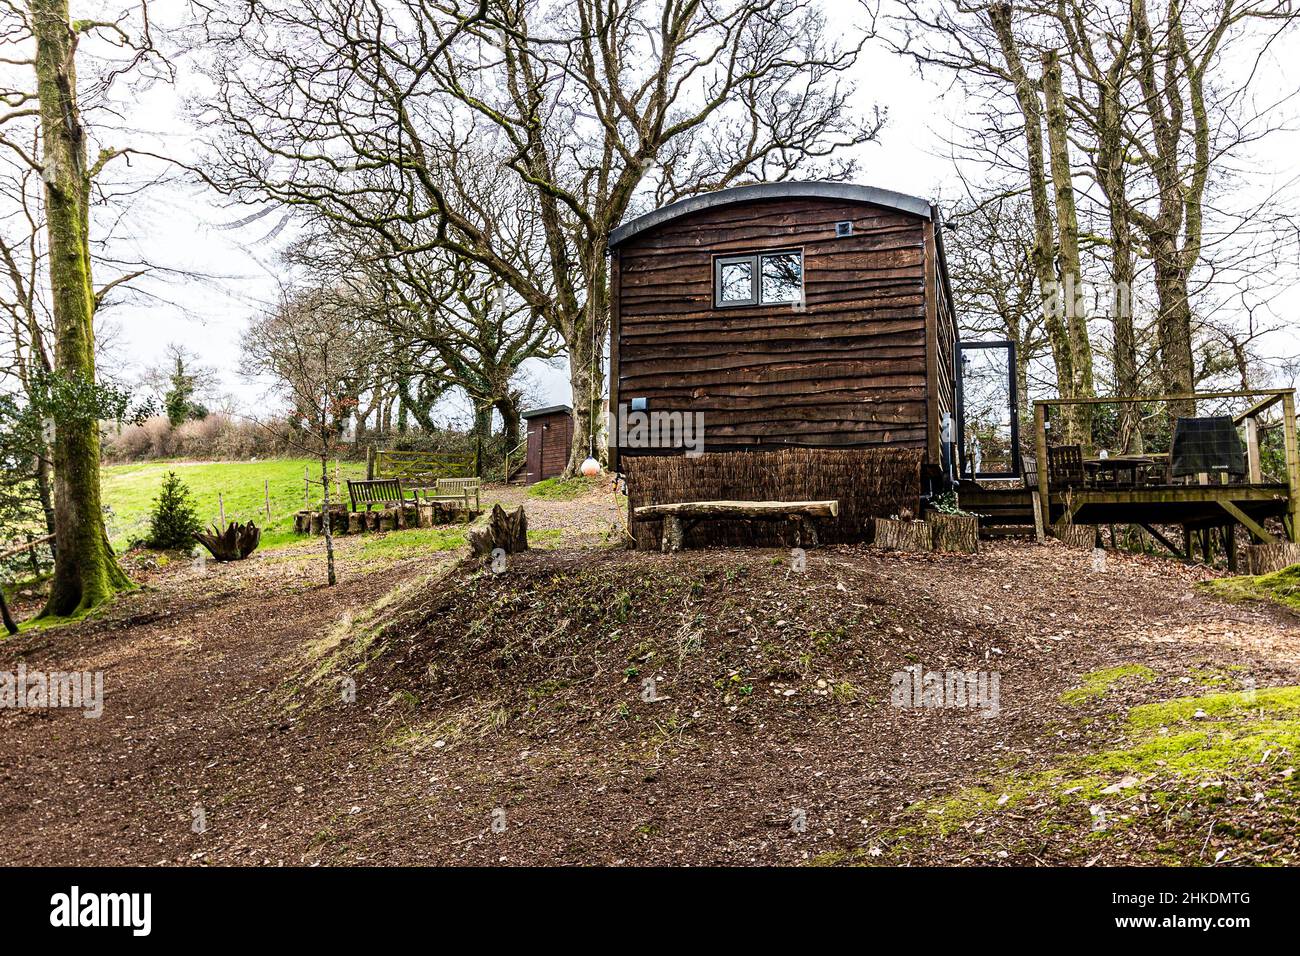 Shepherds' Hut situé dans un cadre boisé, South Devon, U.K Banque D'Images